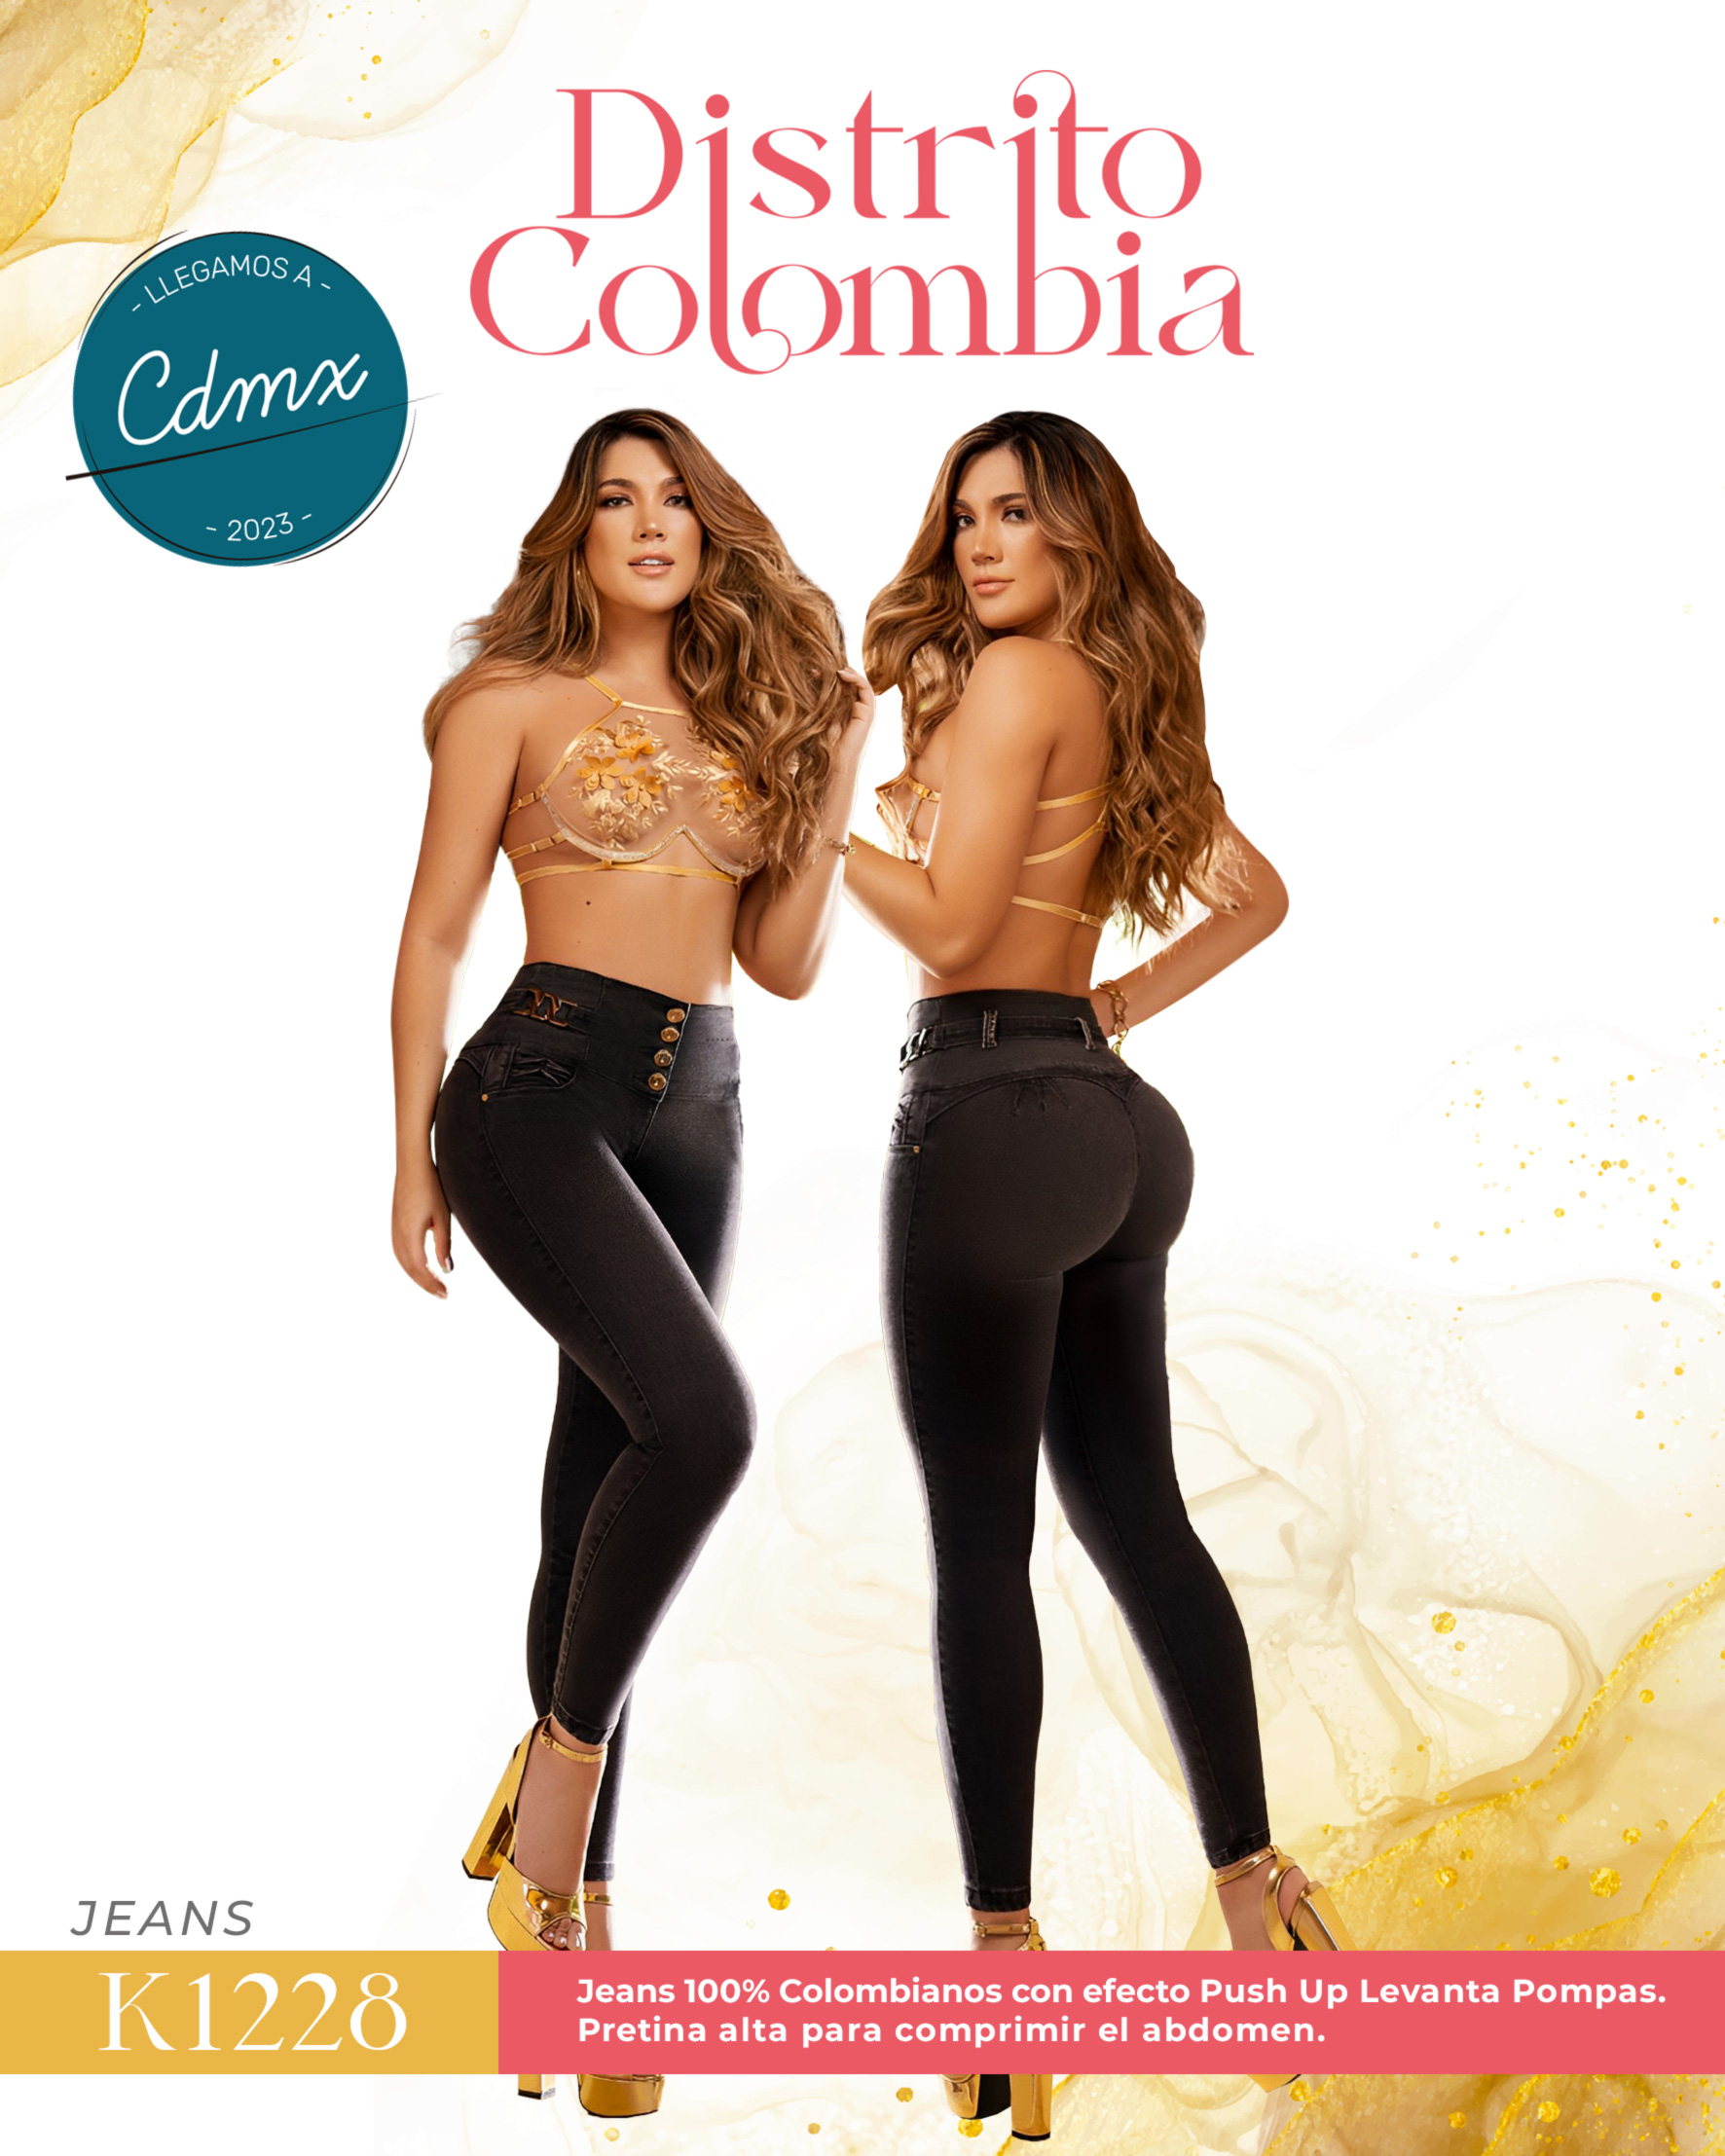 https://distrito-colombia.com/wp-content/uploads/2023/06/17.1-Jeans-Colombianos-Levanta-Pompas-Distrito-Colombia-CDMX-1228.jpg